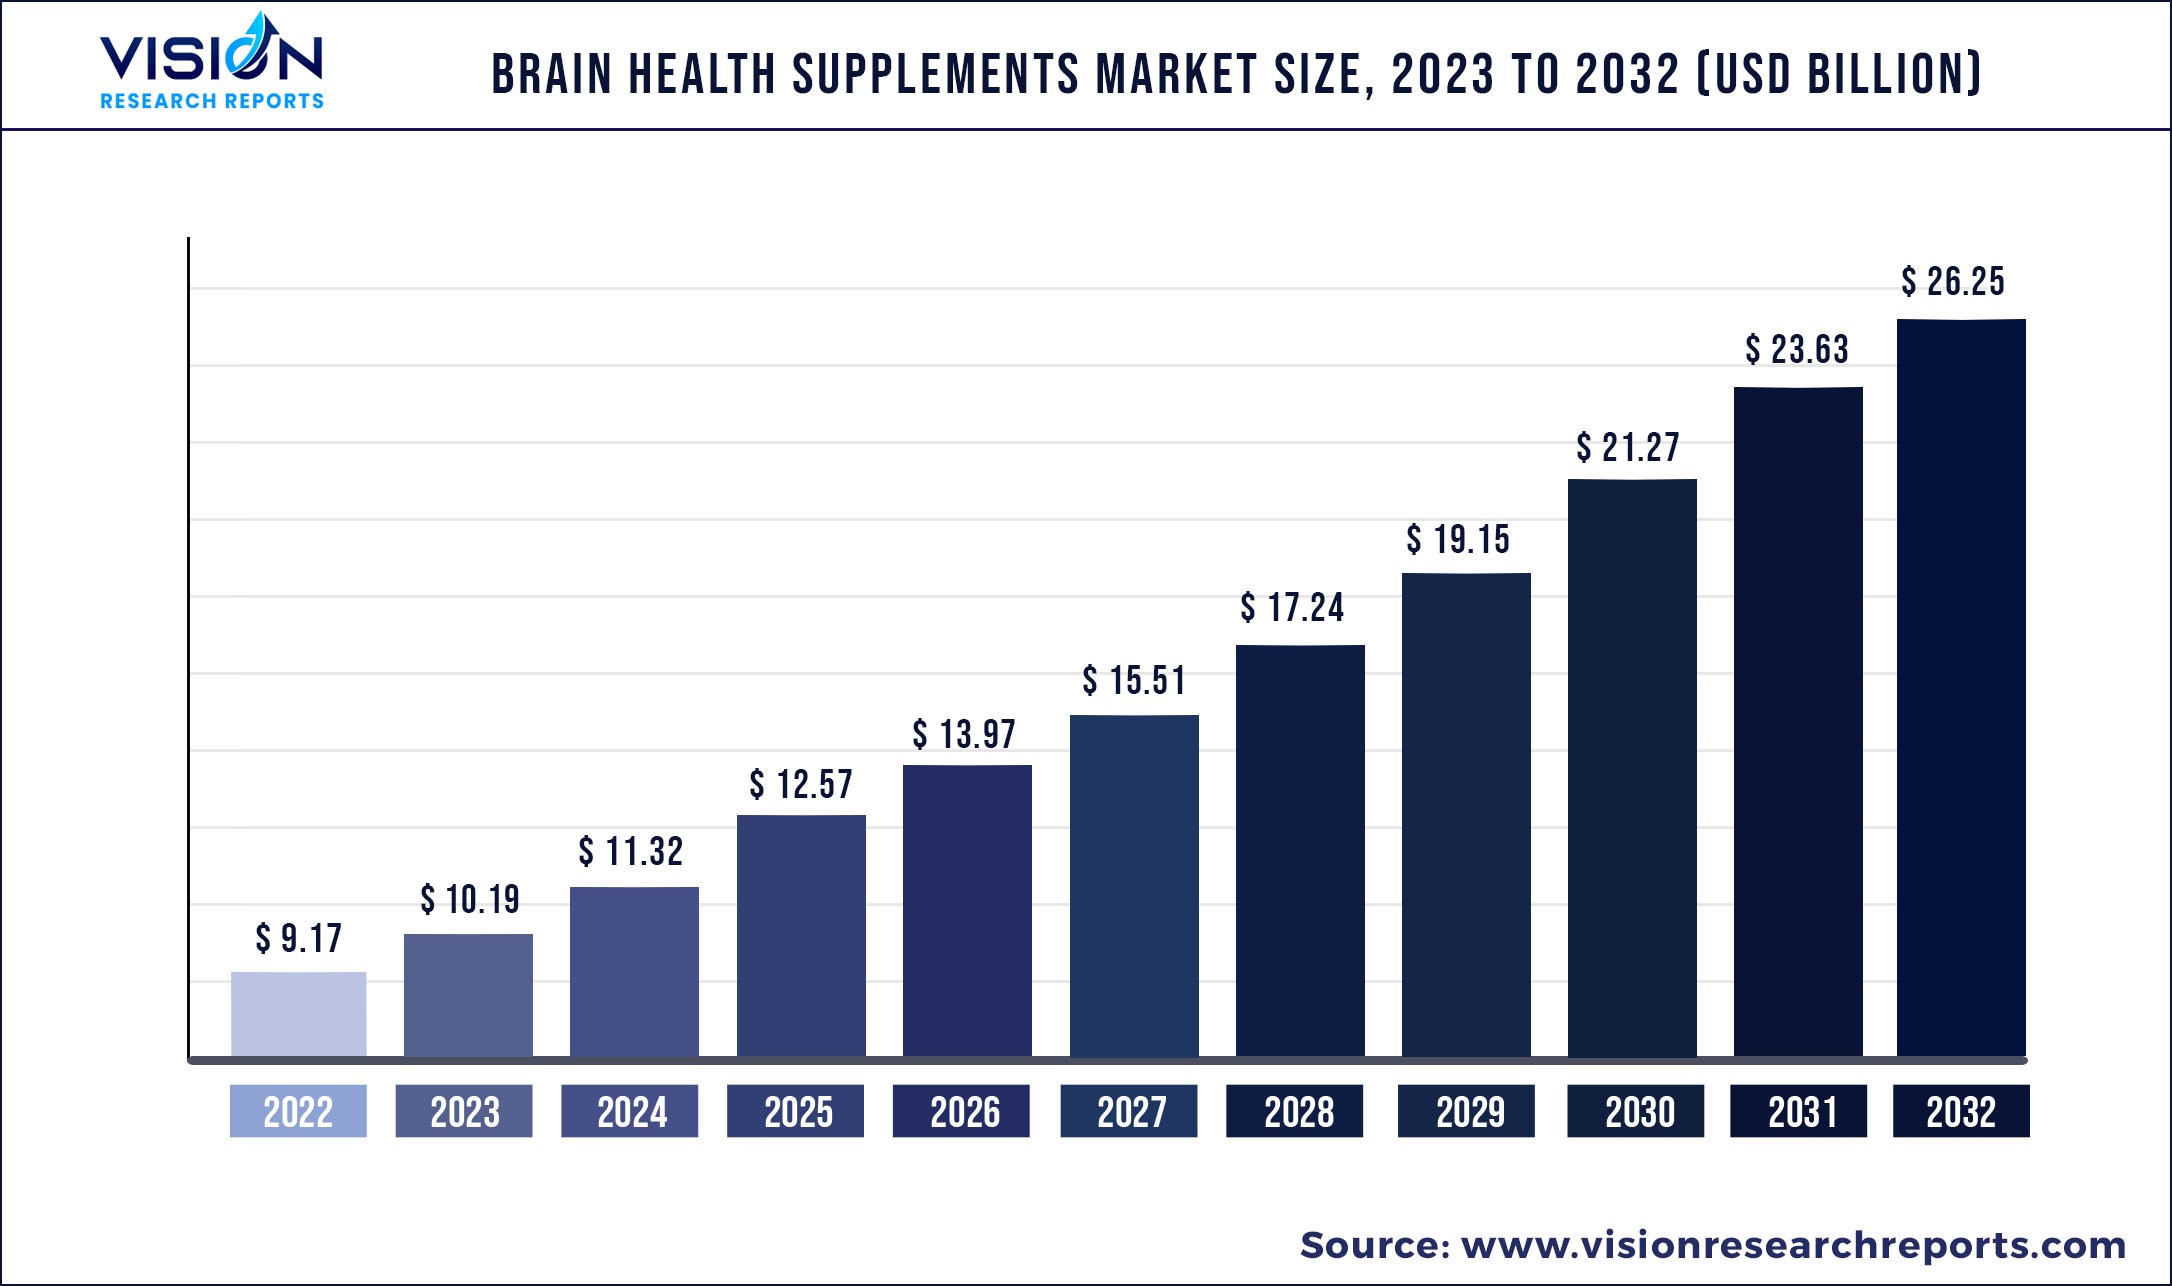 Brain Health Supplements Market Size 2023 to 2032